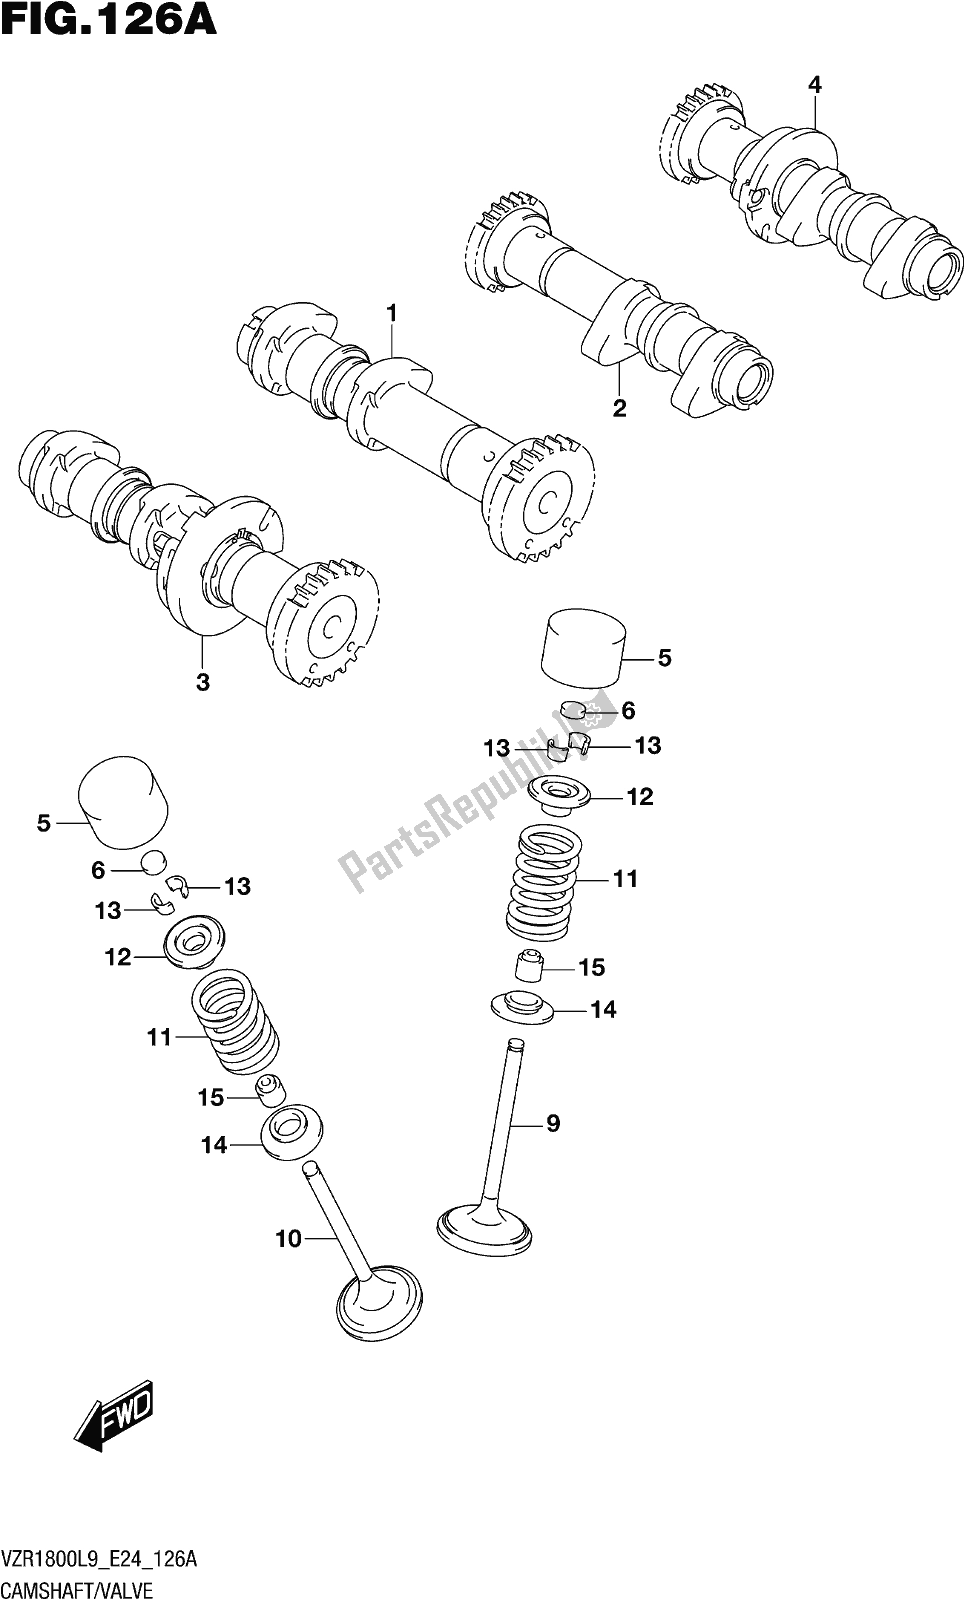 Toutes les pièces pour le Fig. 126a Camshaft/valve du Suzuki VZR 1800 BZ 2019